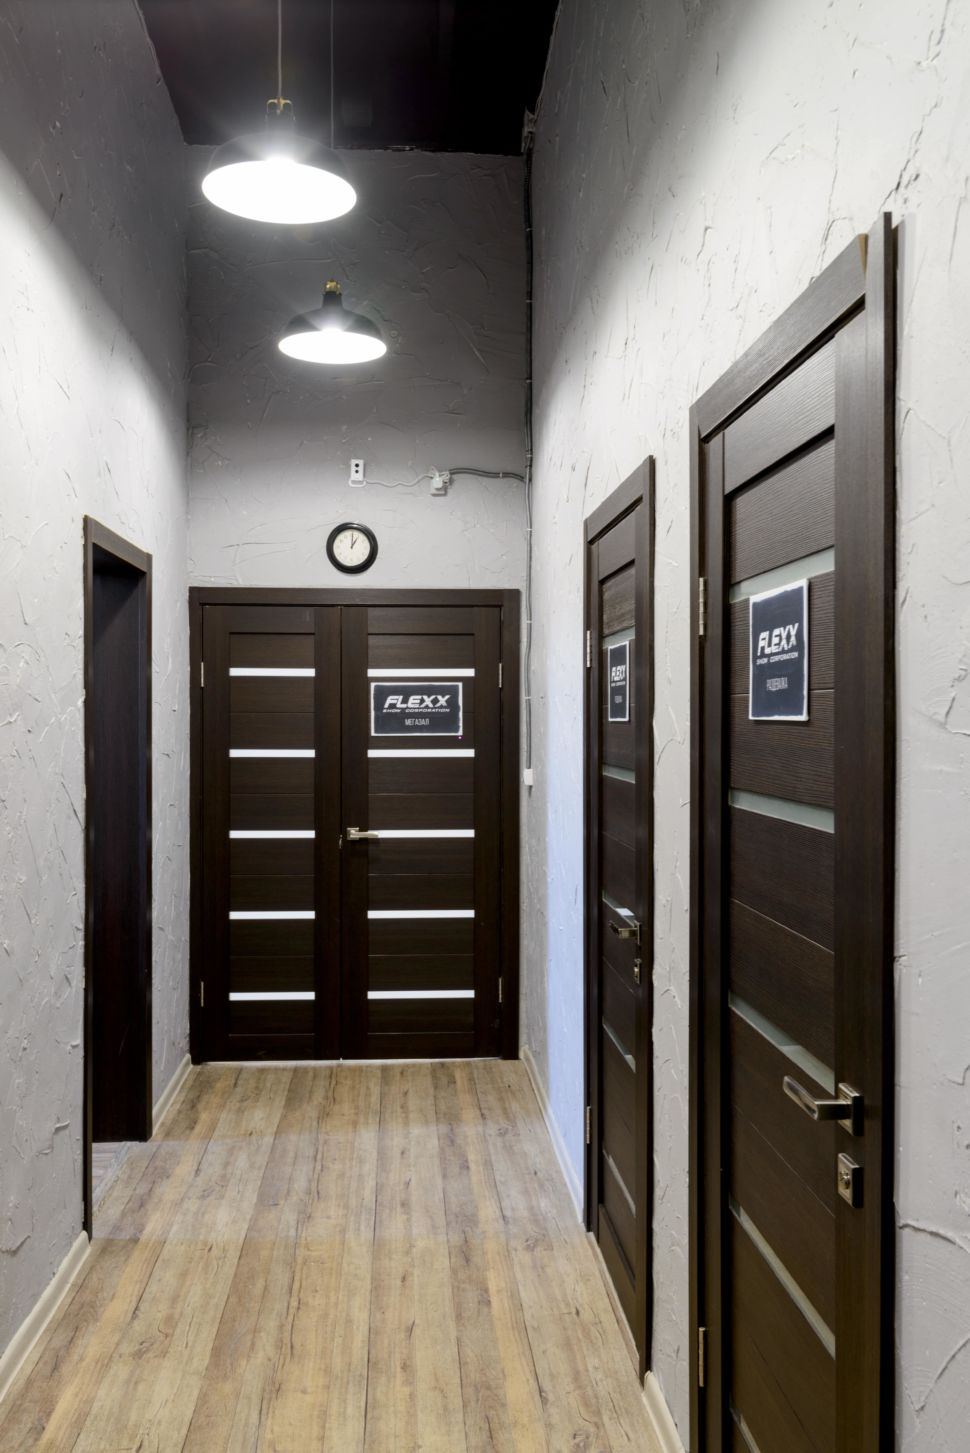 Фотография интерьера коридора 9 кв.м в стиле лофт, серые оттенки, темные межкомнатные двери, светильники, часы